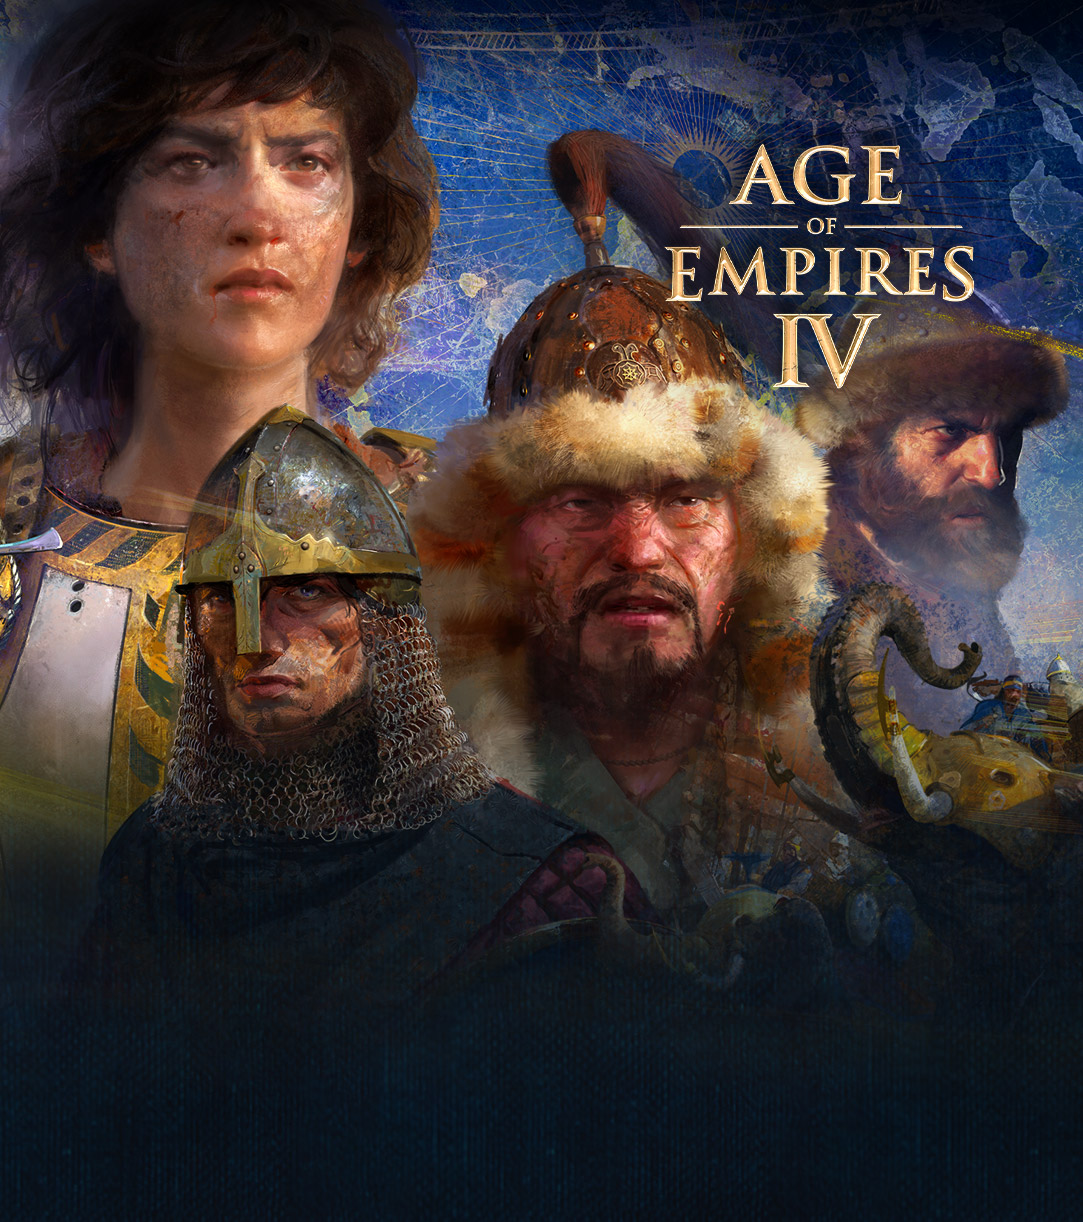 Age of Empires IV 推出4 個角色與地圖背景上的戰爭場景、大象，還有騎著馬的人們圍著牠們